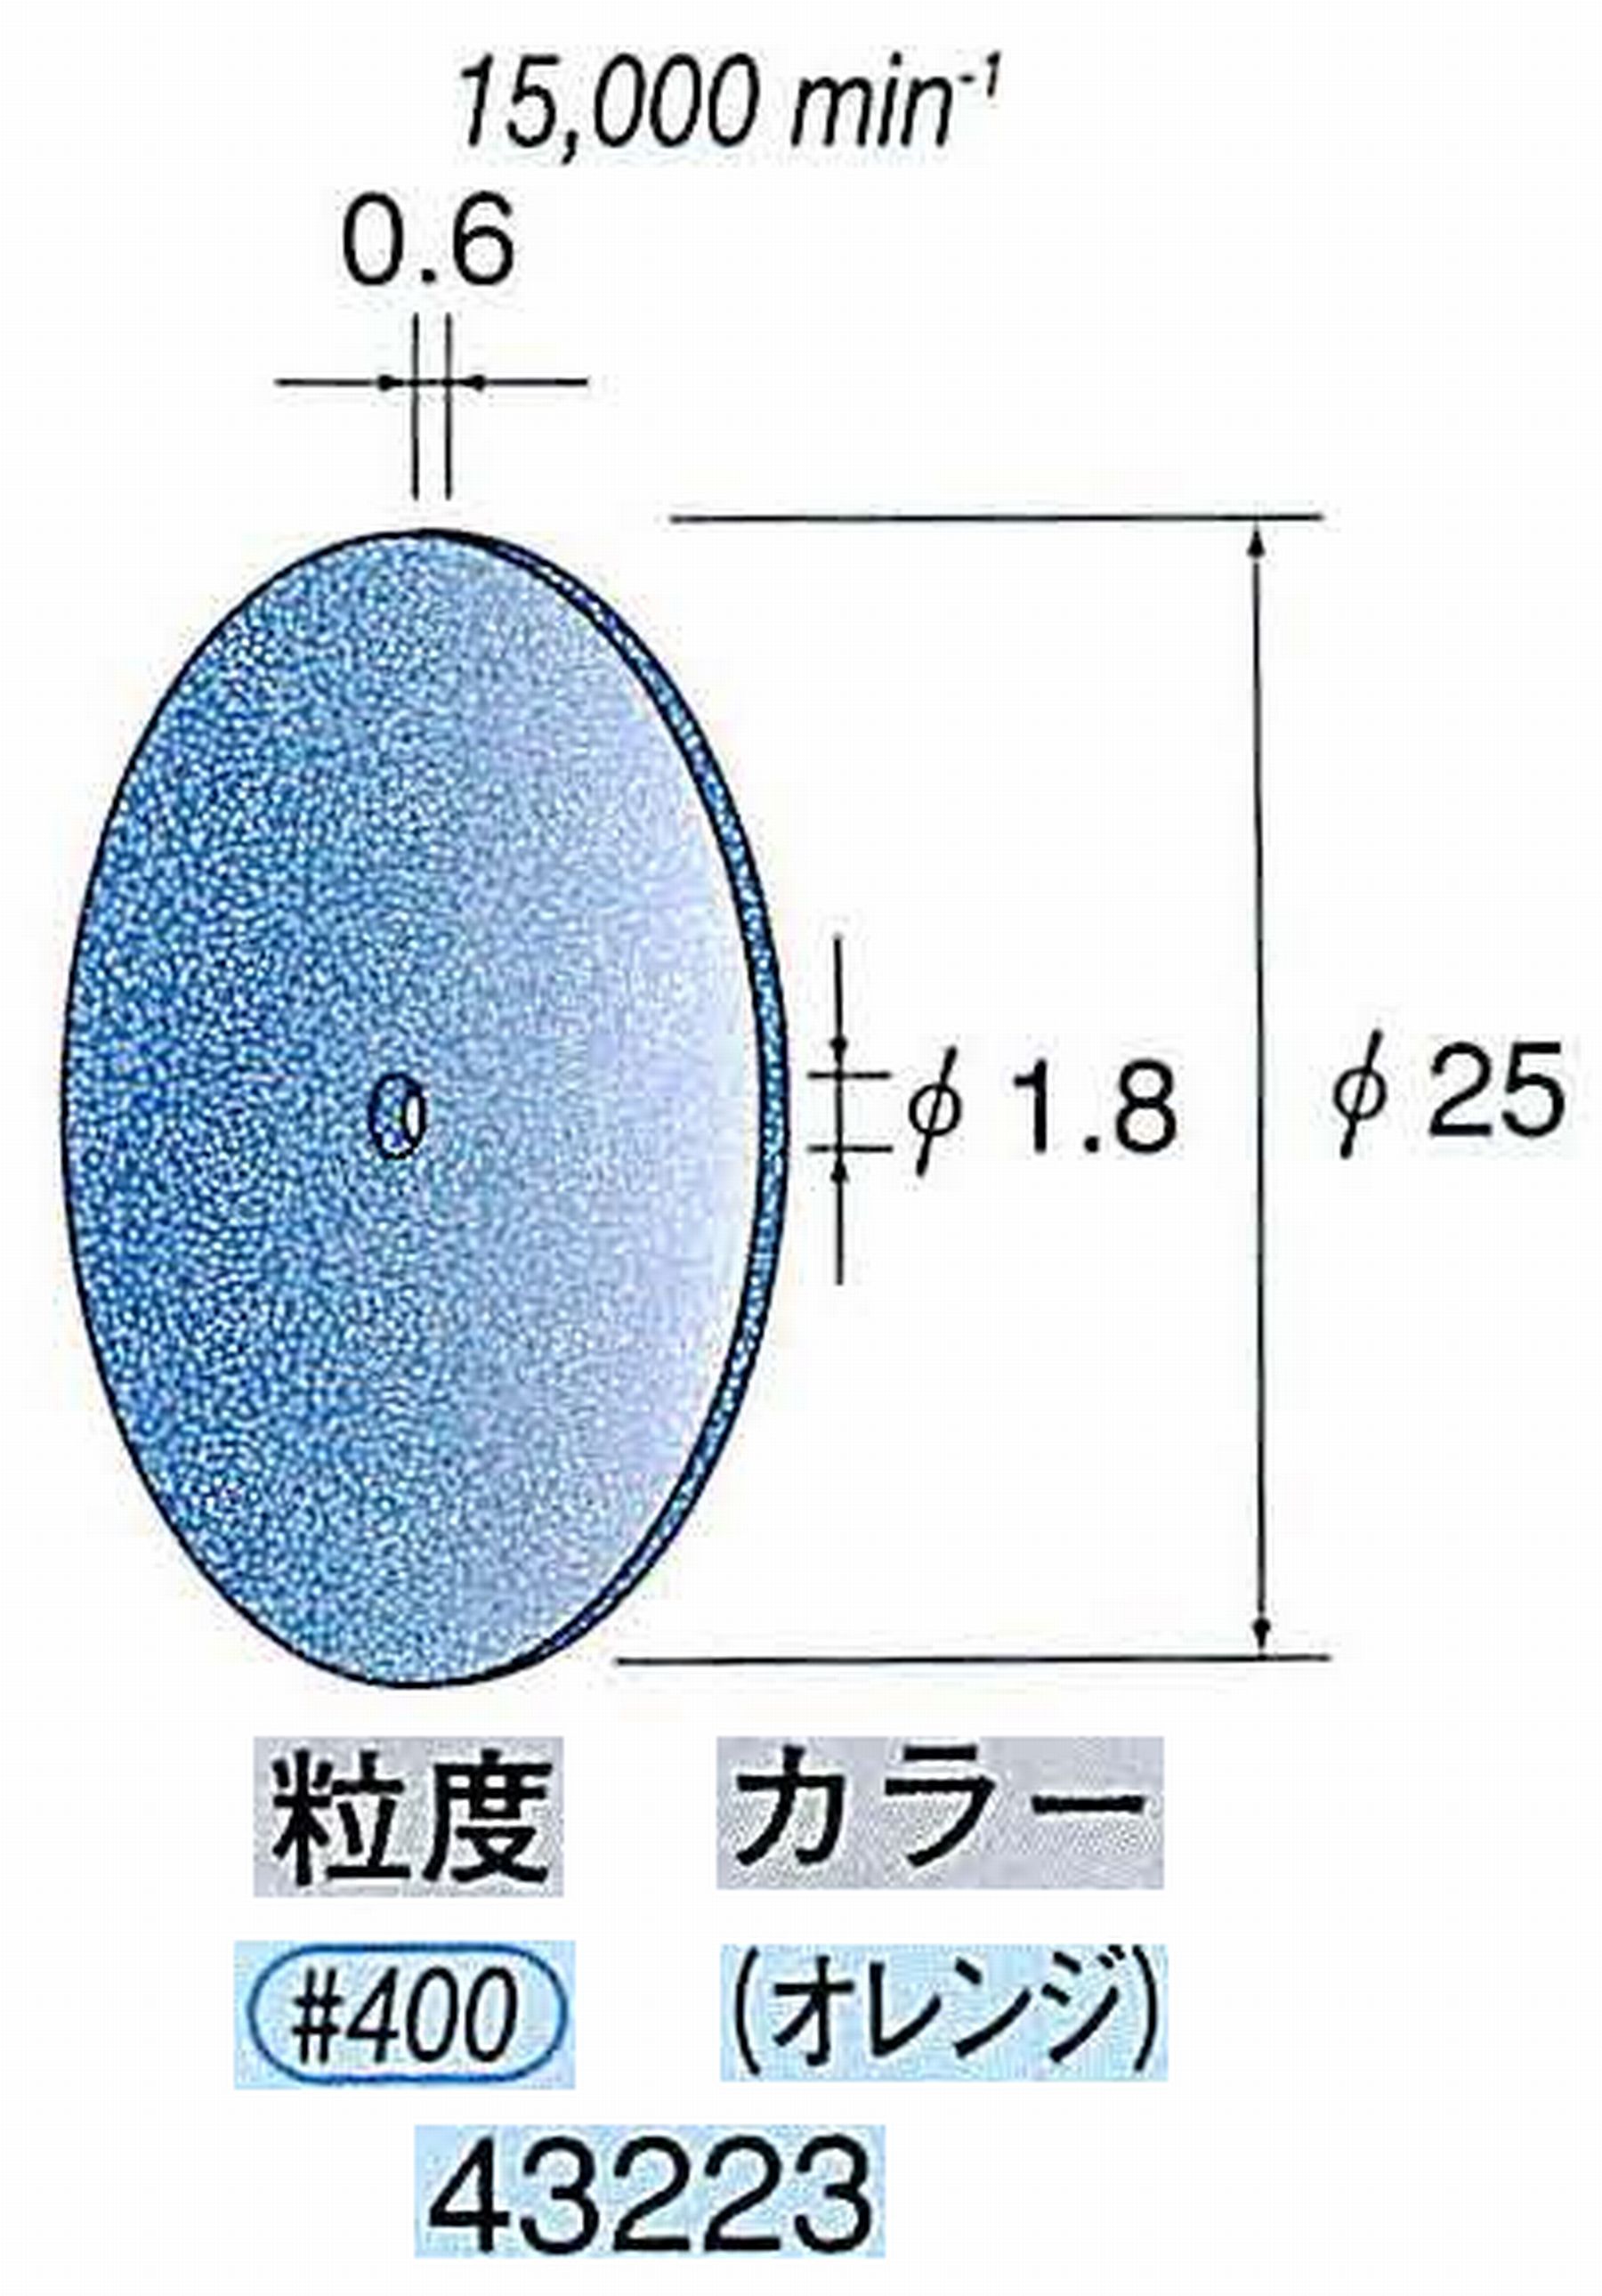 ナカニシ/NAKANISHI セラファイバー砥石ディスク(カラー オレンジ) 43223